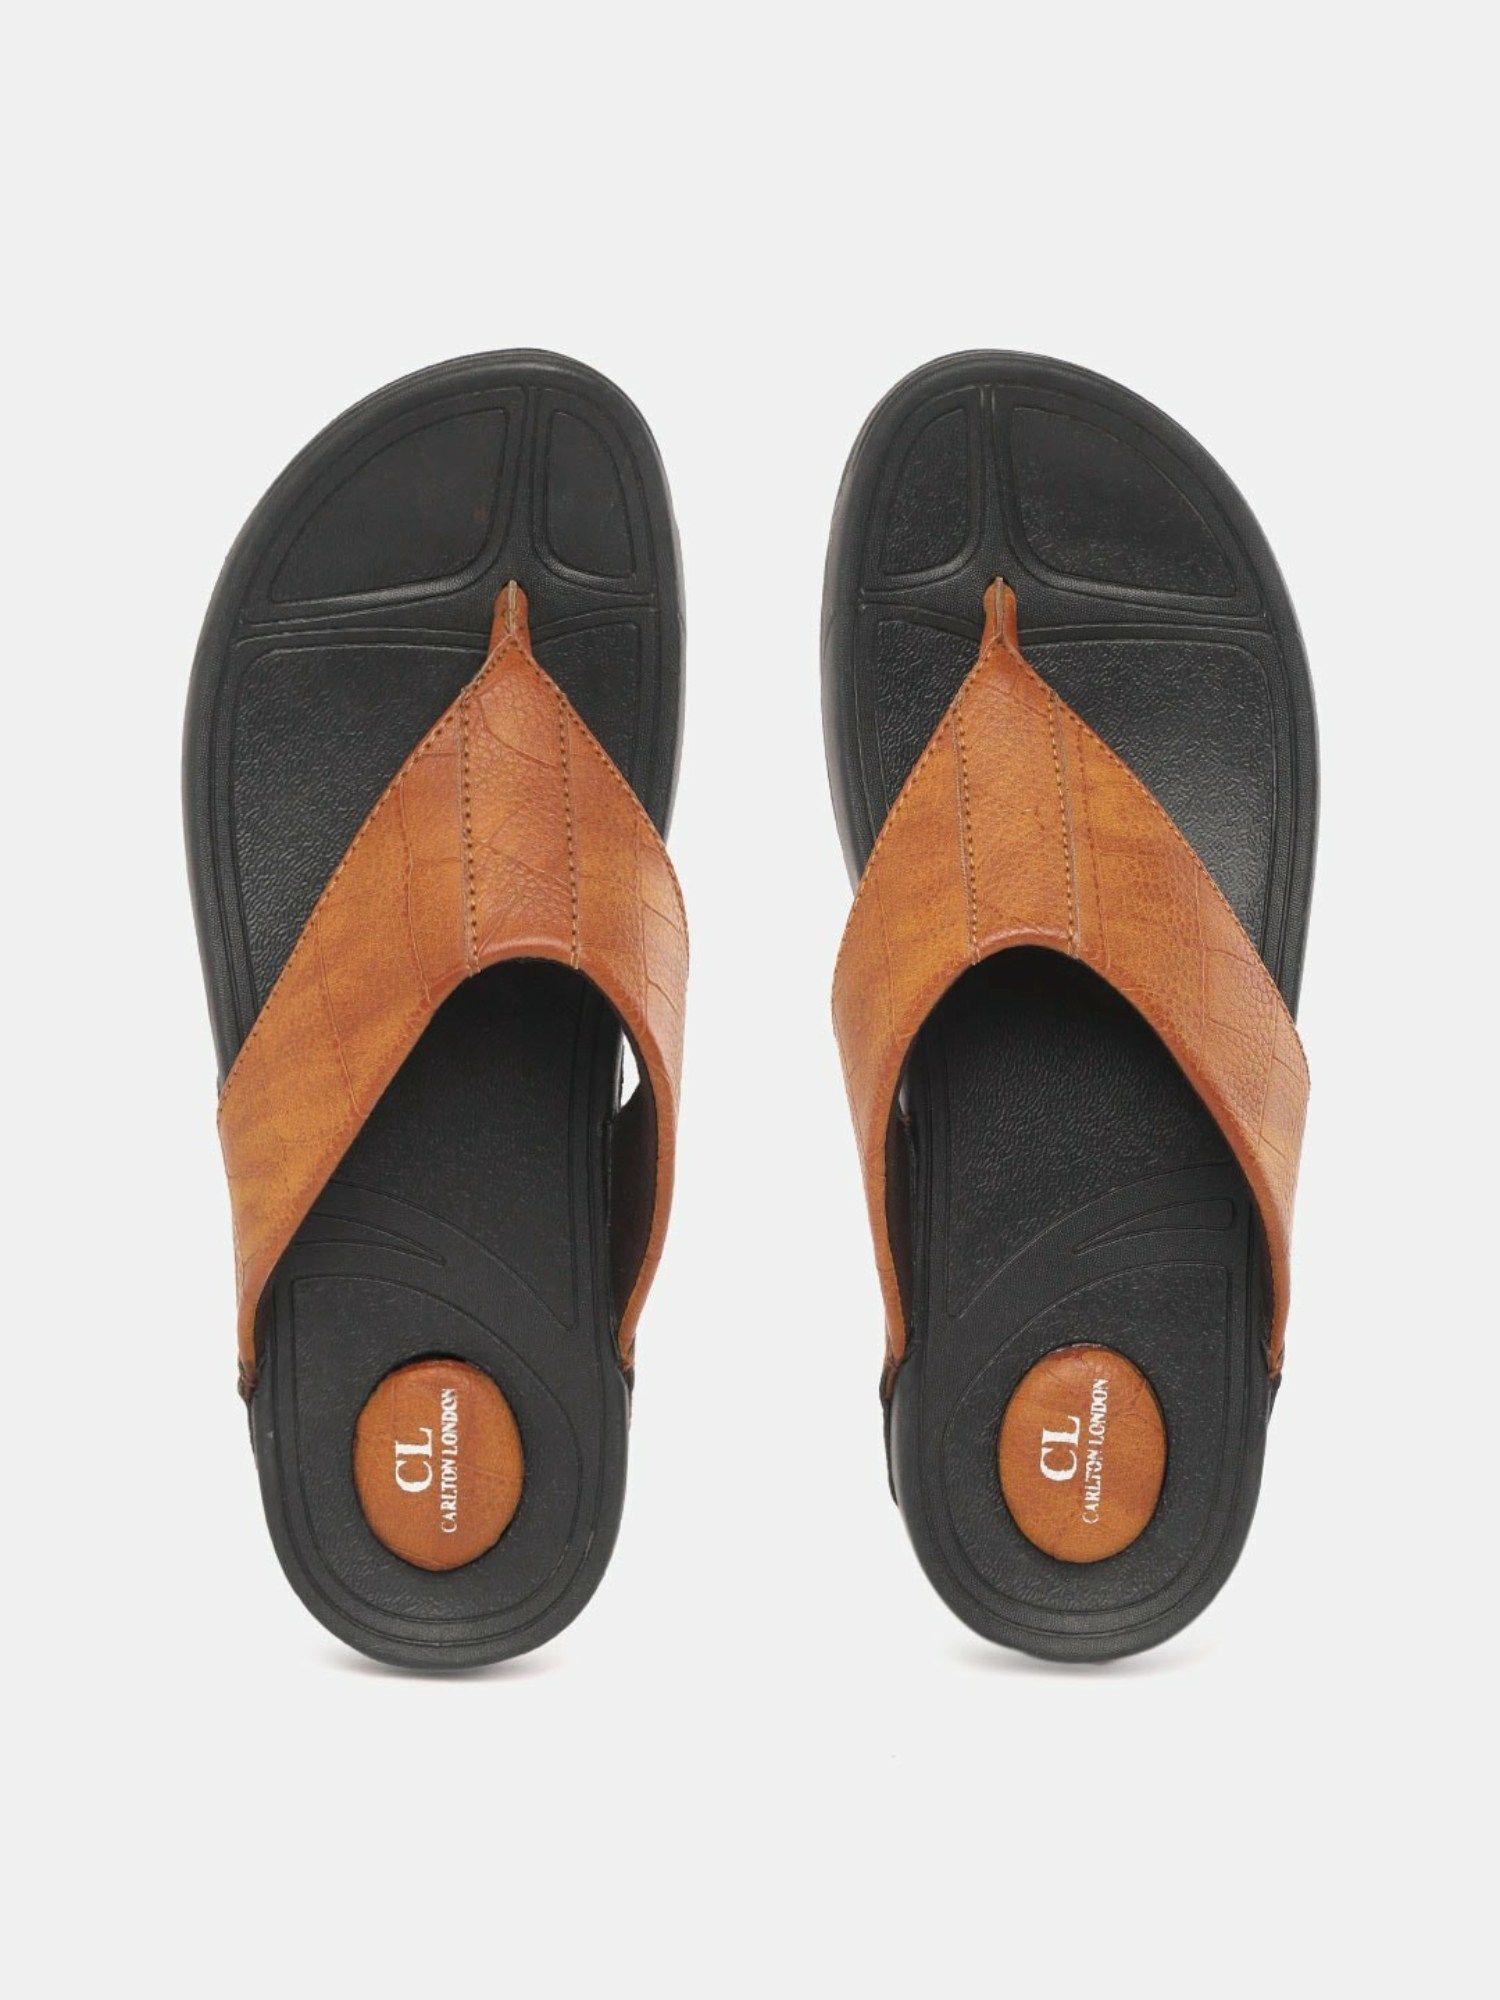 solid tan sandals